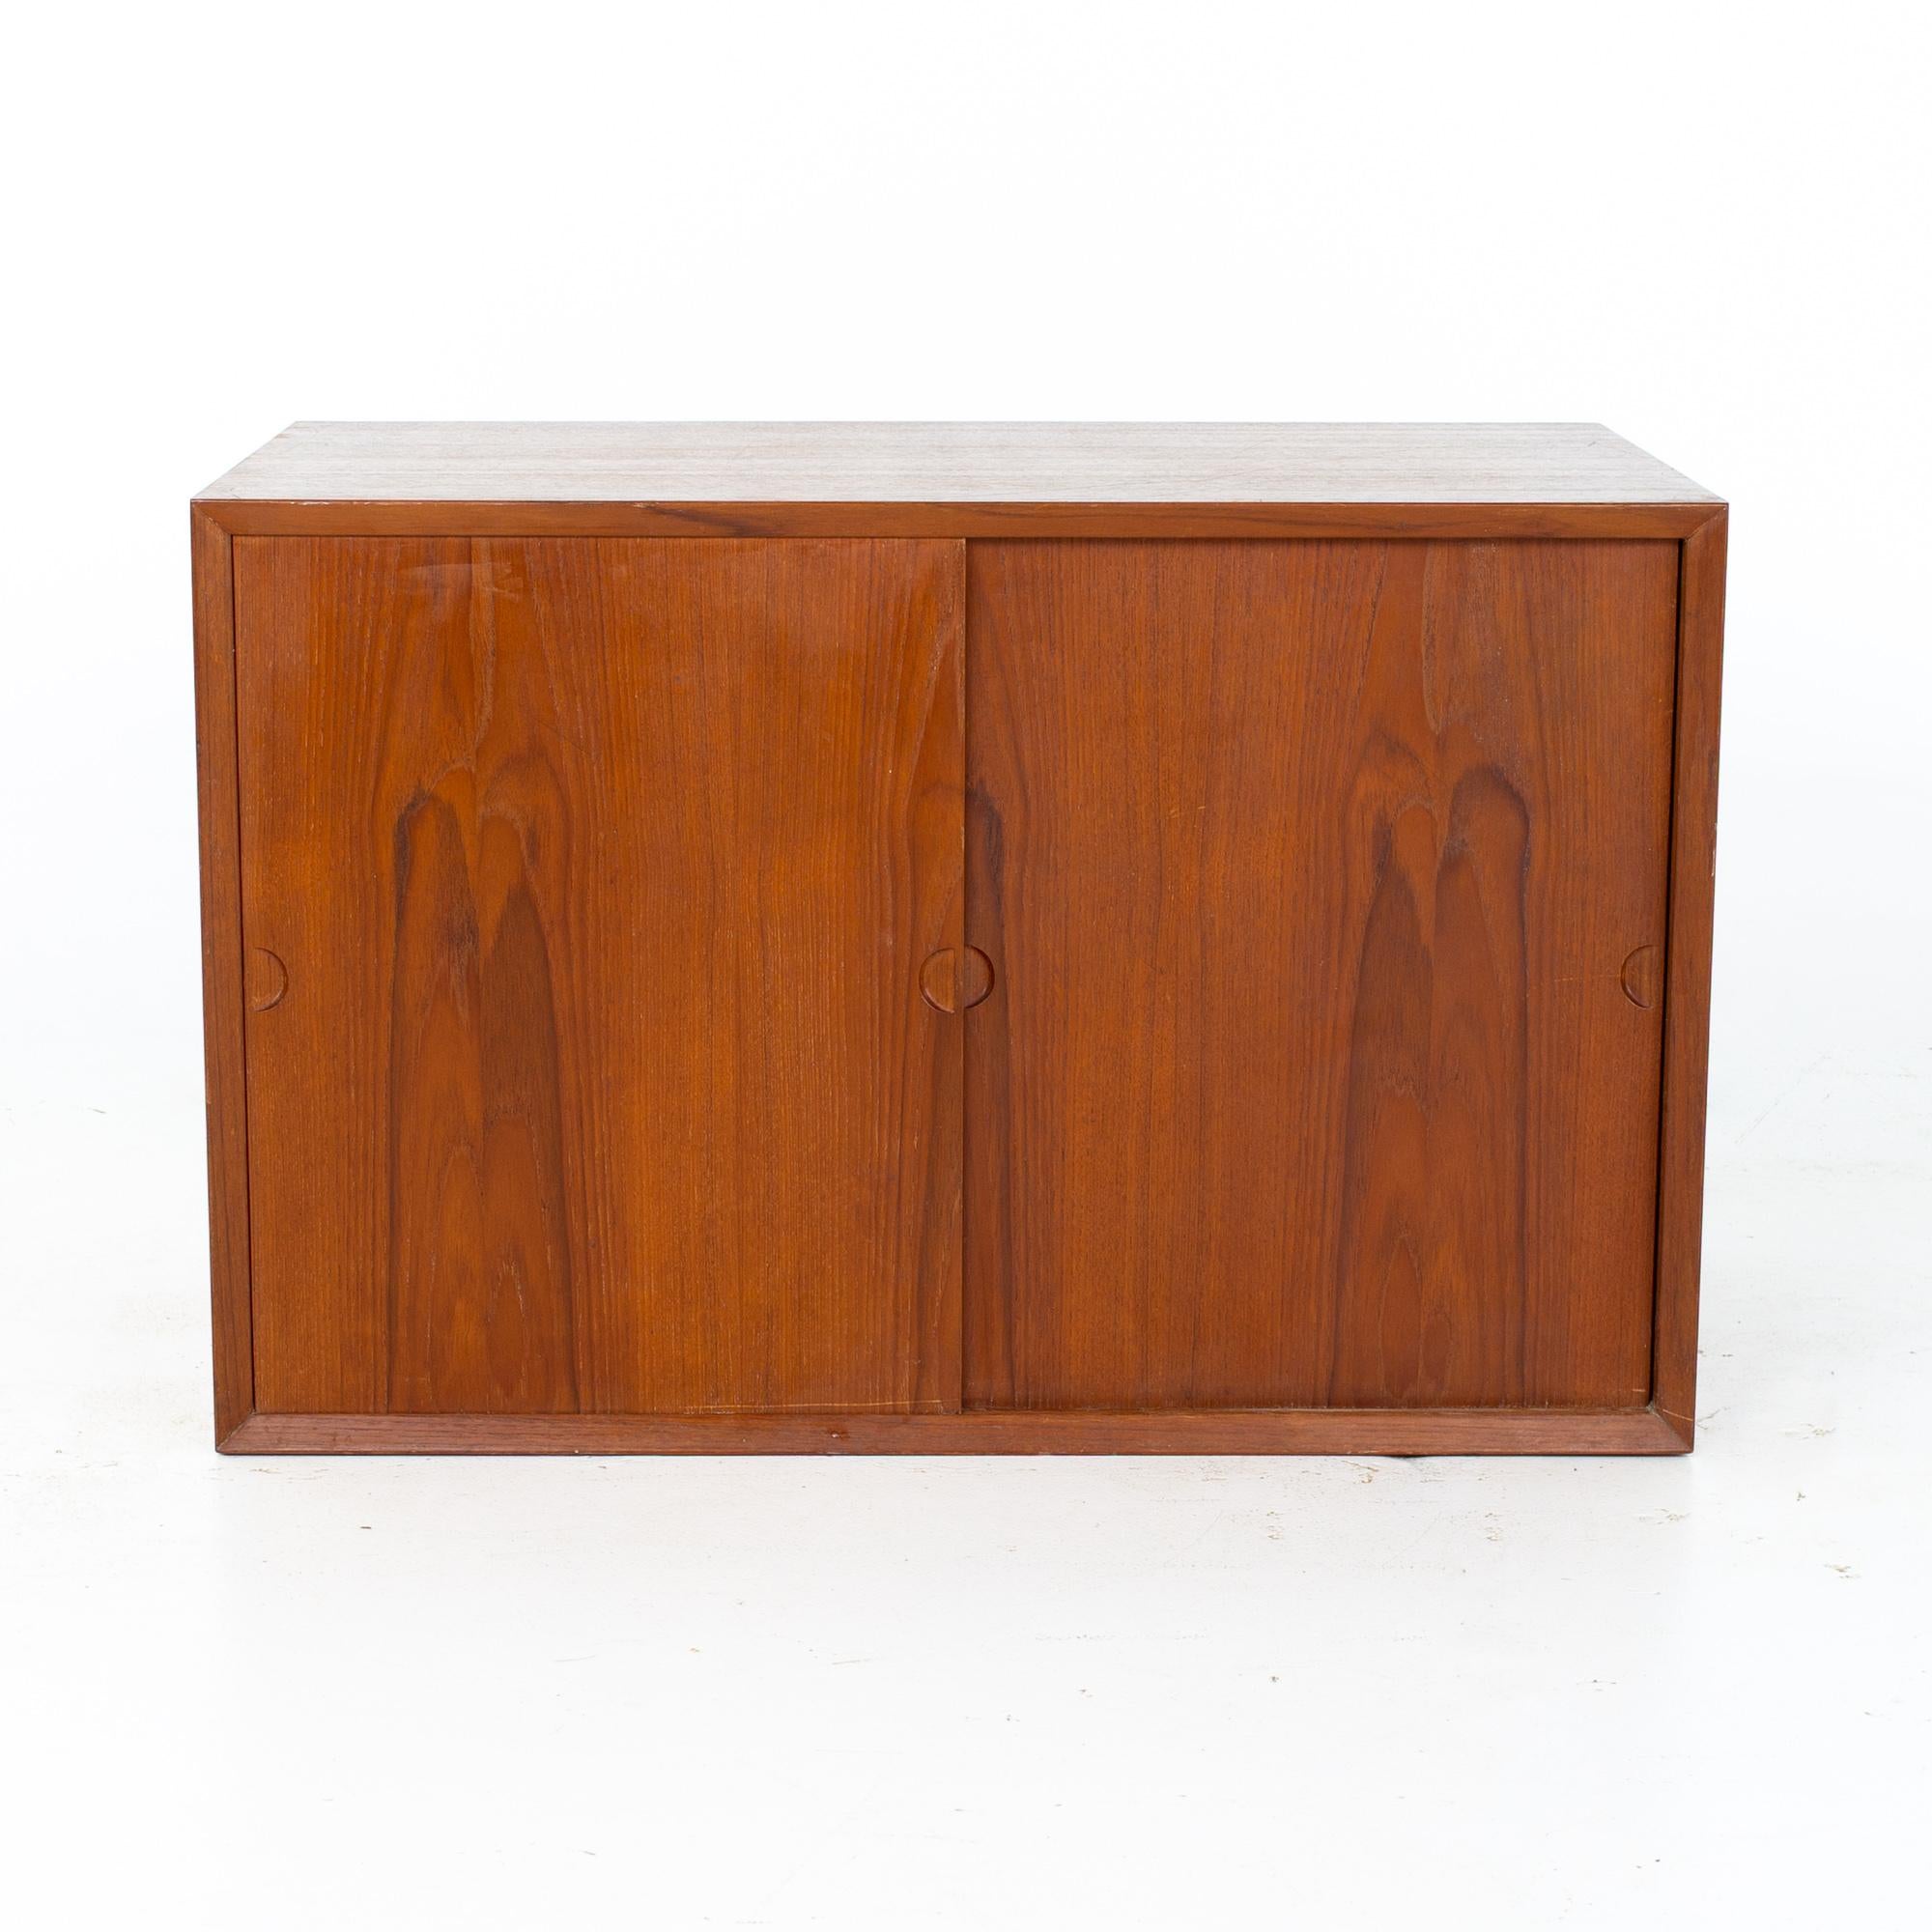 Cado Mid Century Teak Schiebetür Wandschrank Box

Oberschrank-Box misst: 31,5 breit x 18 tief x 20,5 Zoll hoch

Alle Möbelstücke sind in einem so genannten restaurierten Vintage-Zustand zu haben. Das bedeutet, dass das Stück beim Kauf